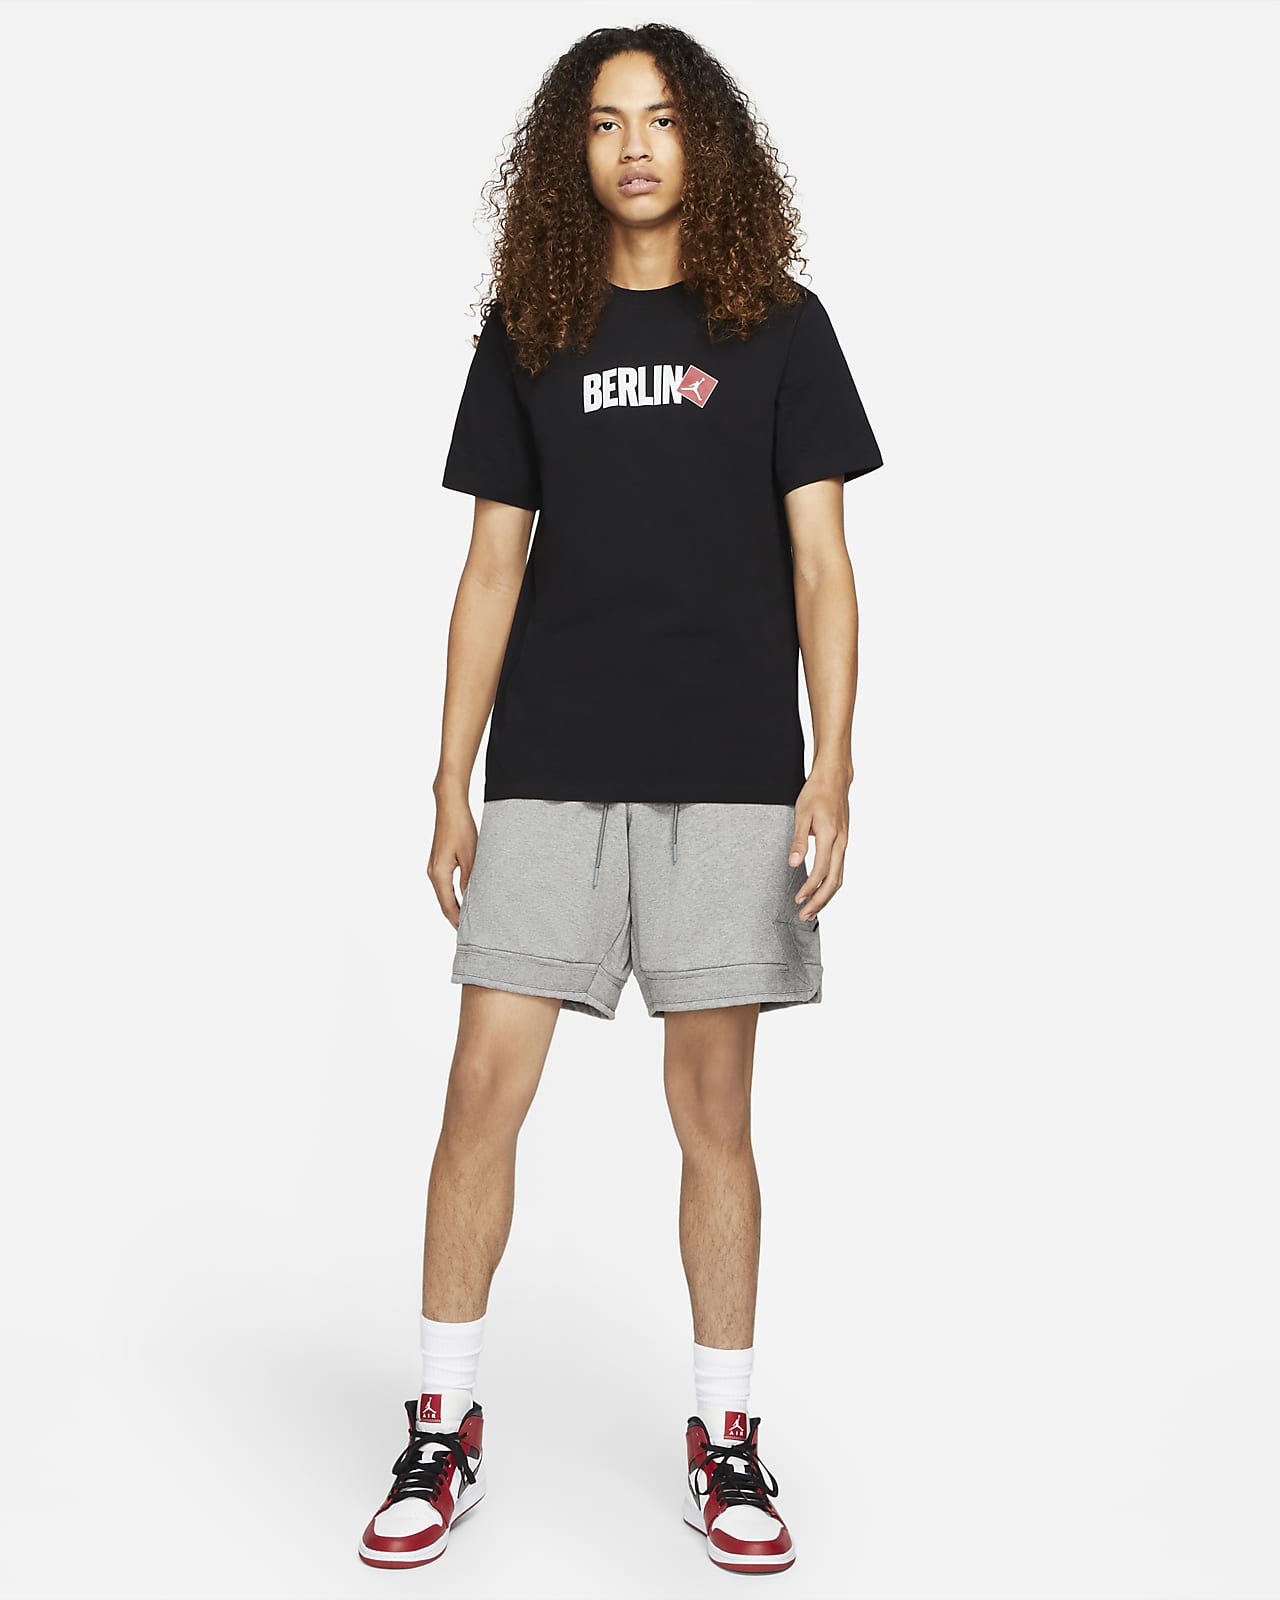 Jordan Berlin Men's Short-Sleeve T-Shirt. Nike SA